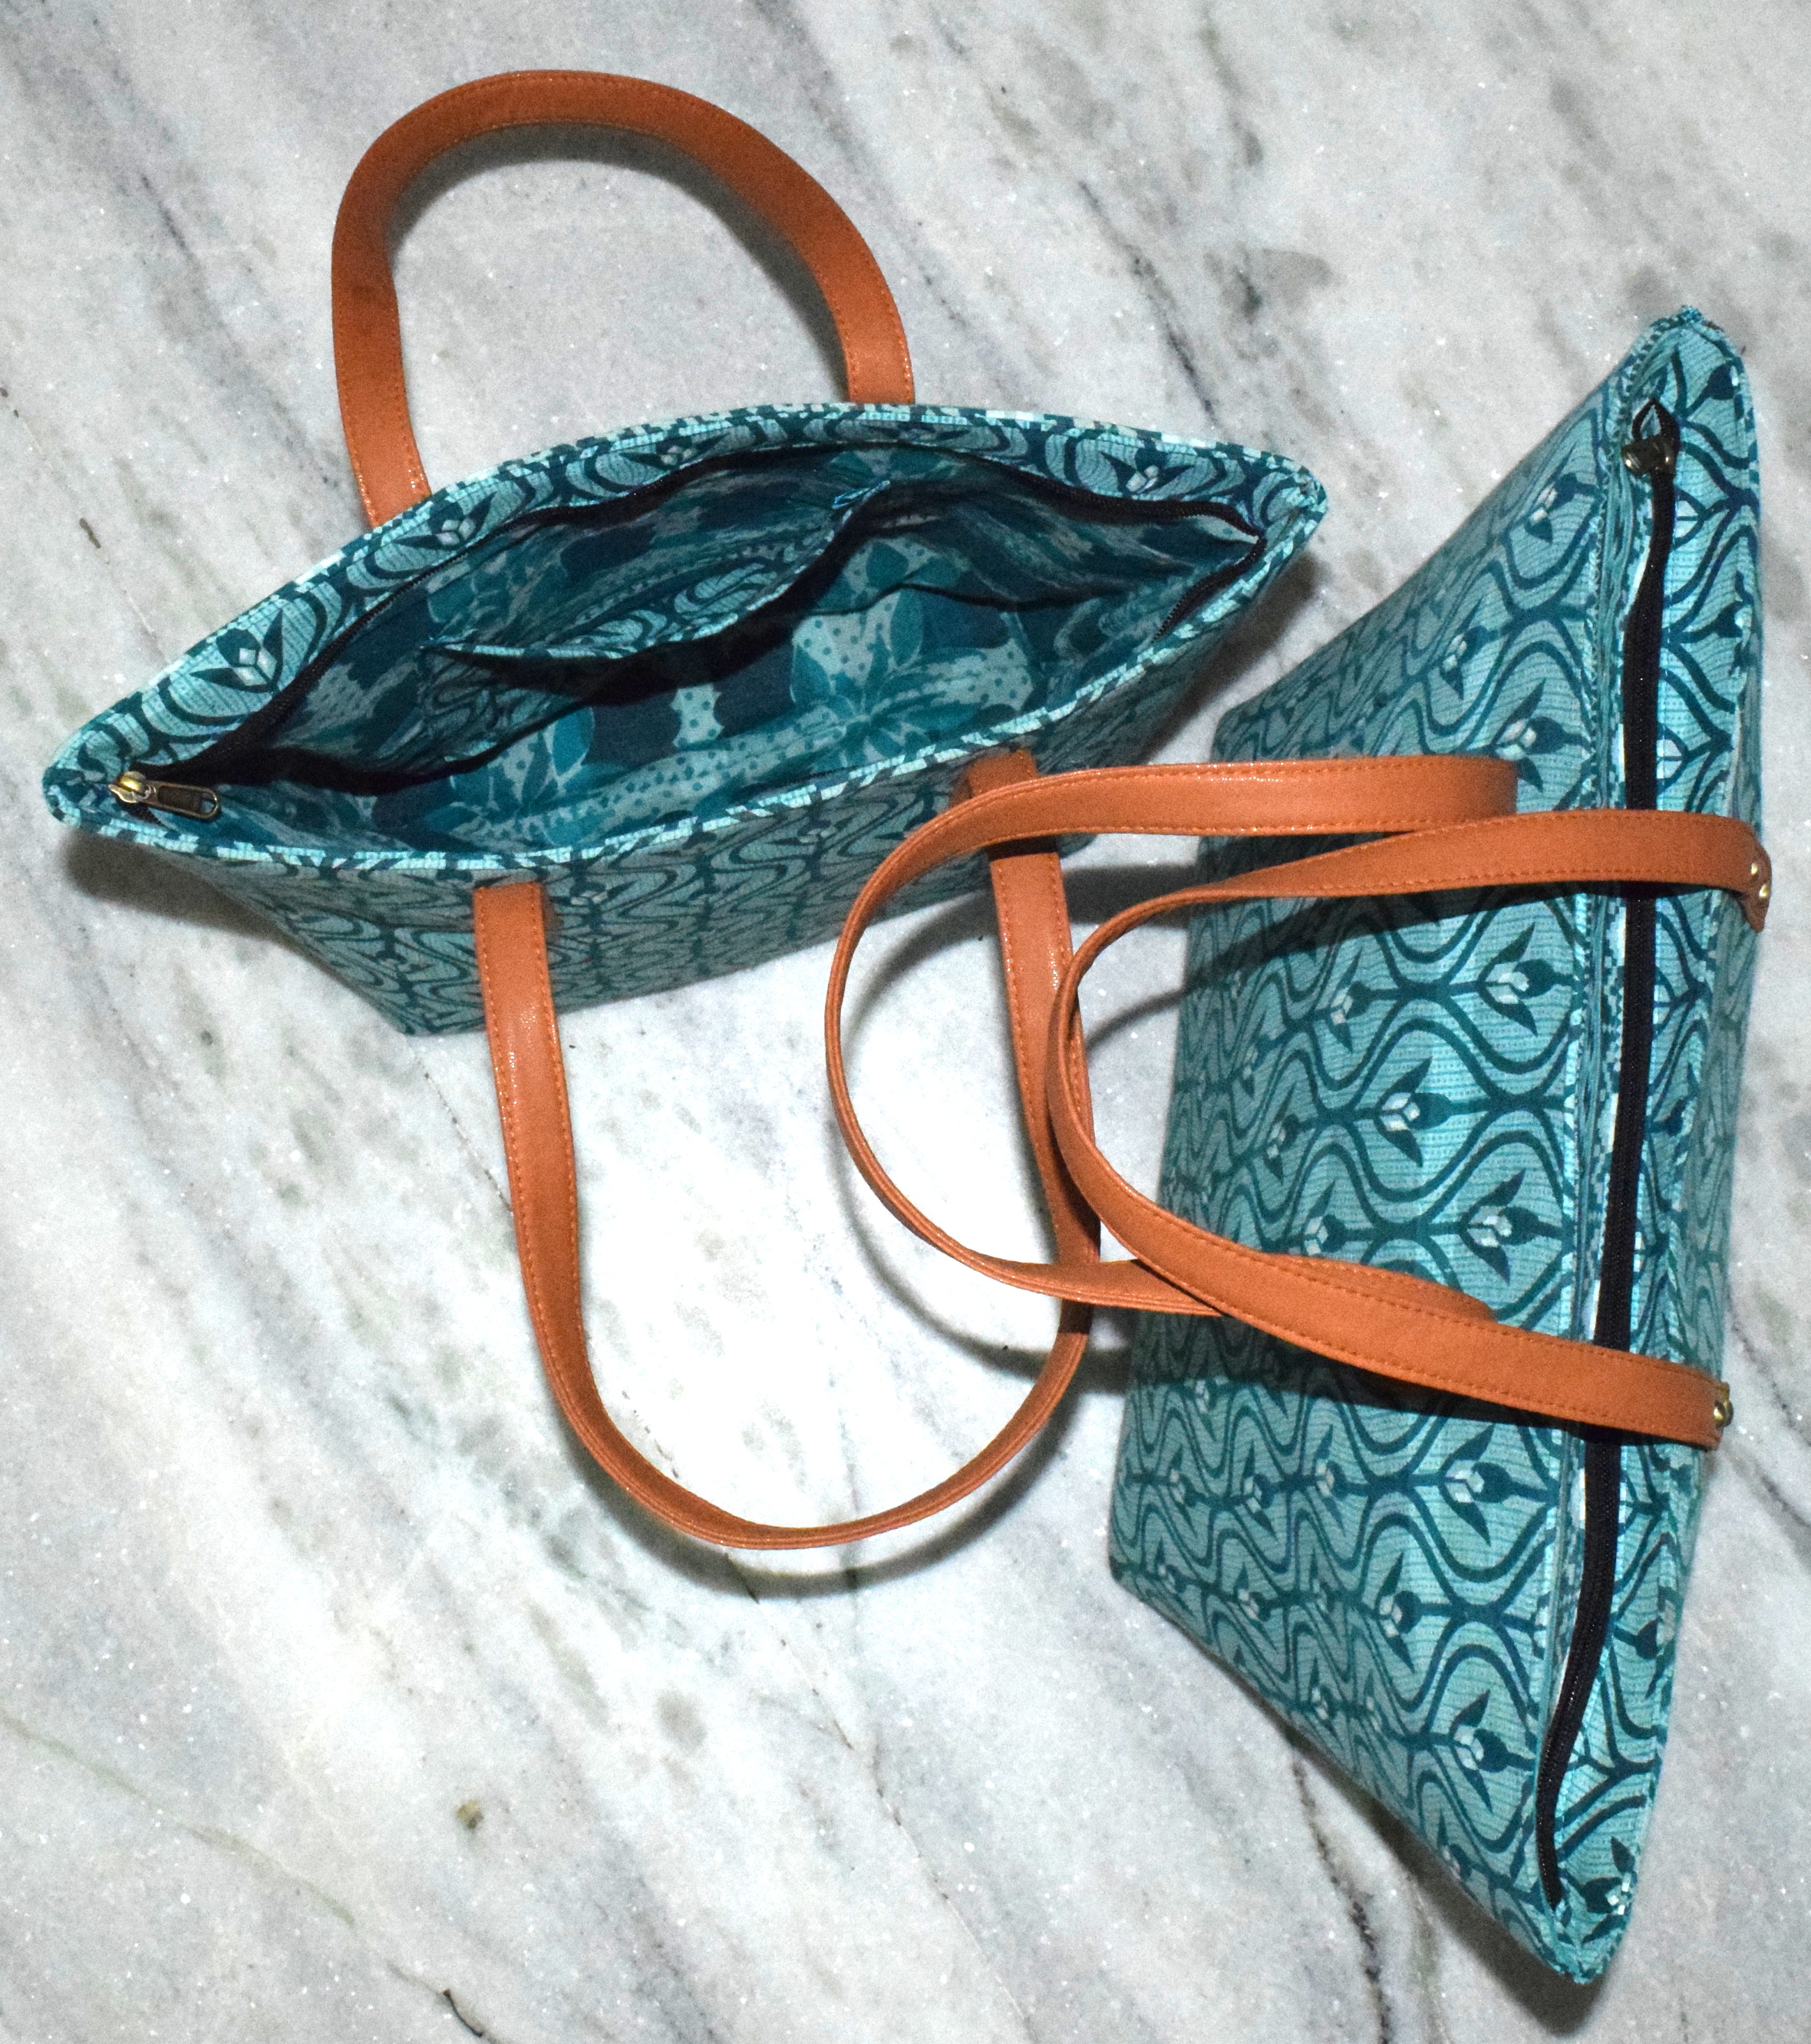 Vintage Sari Handbags Wholesale Bags Indian Printed Handbags Designer Print bags manufacturer ...